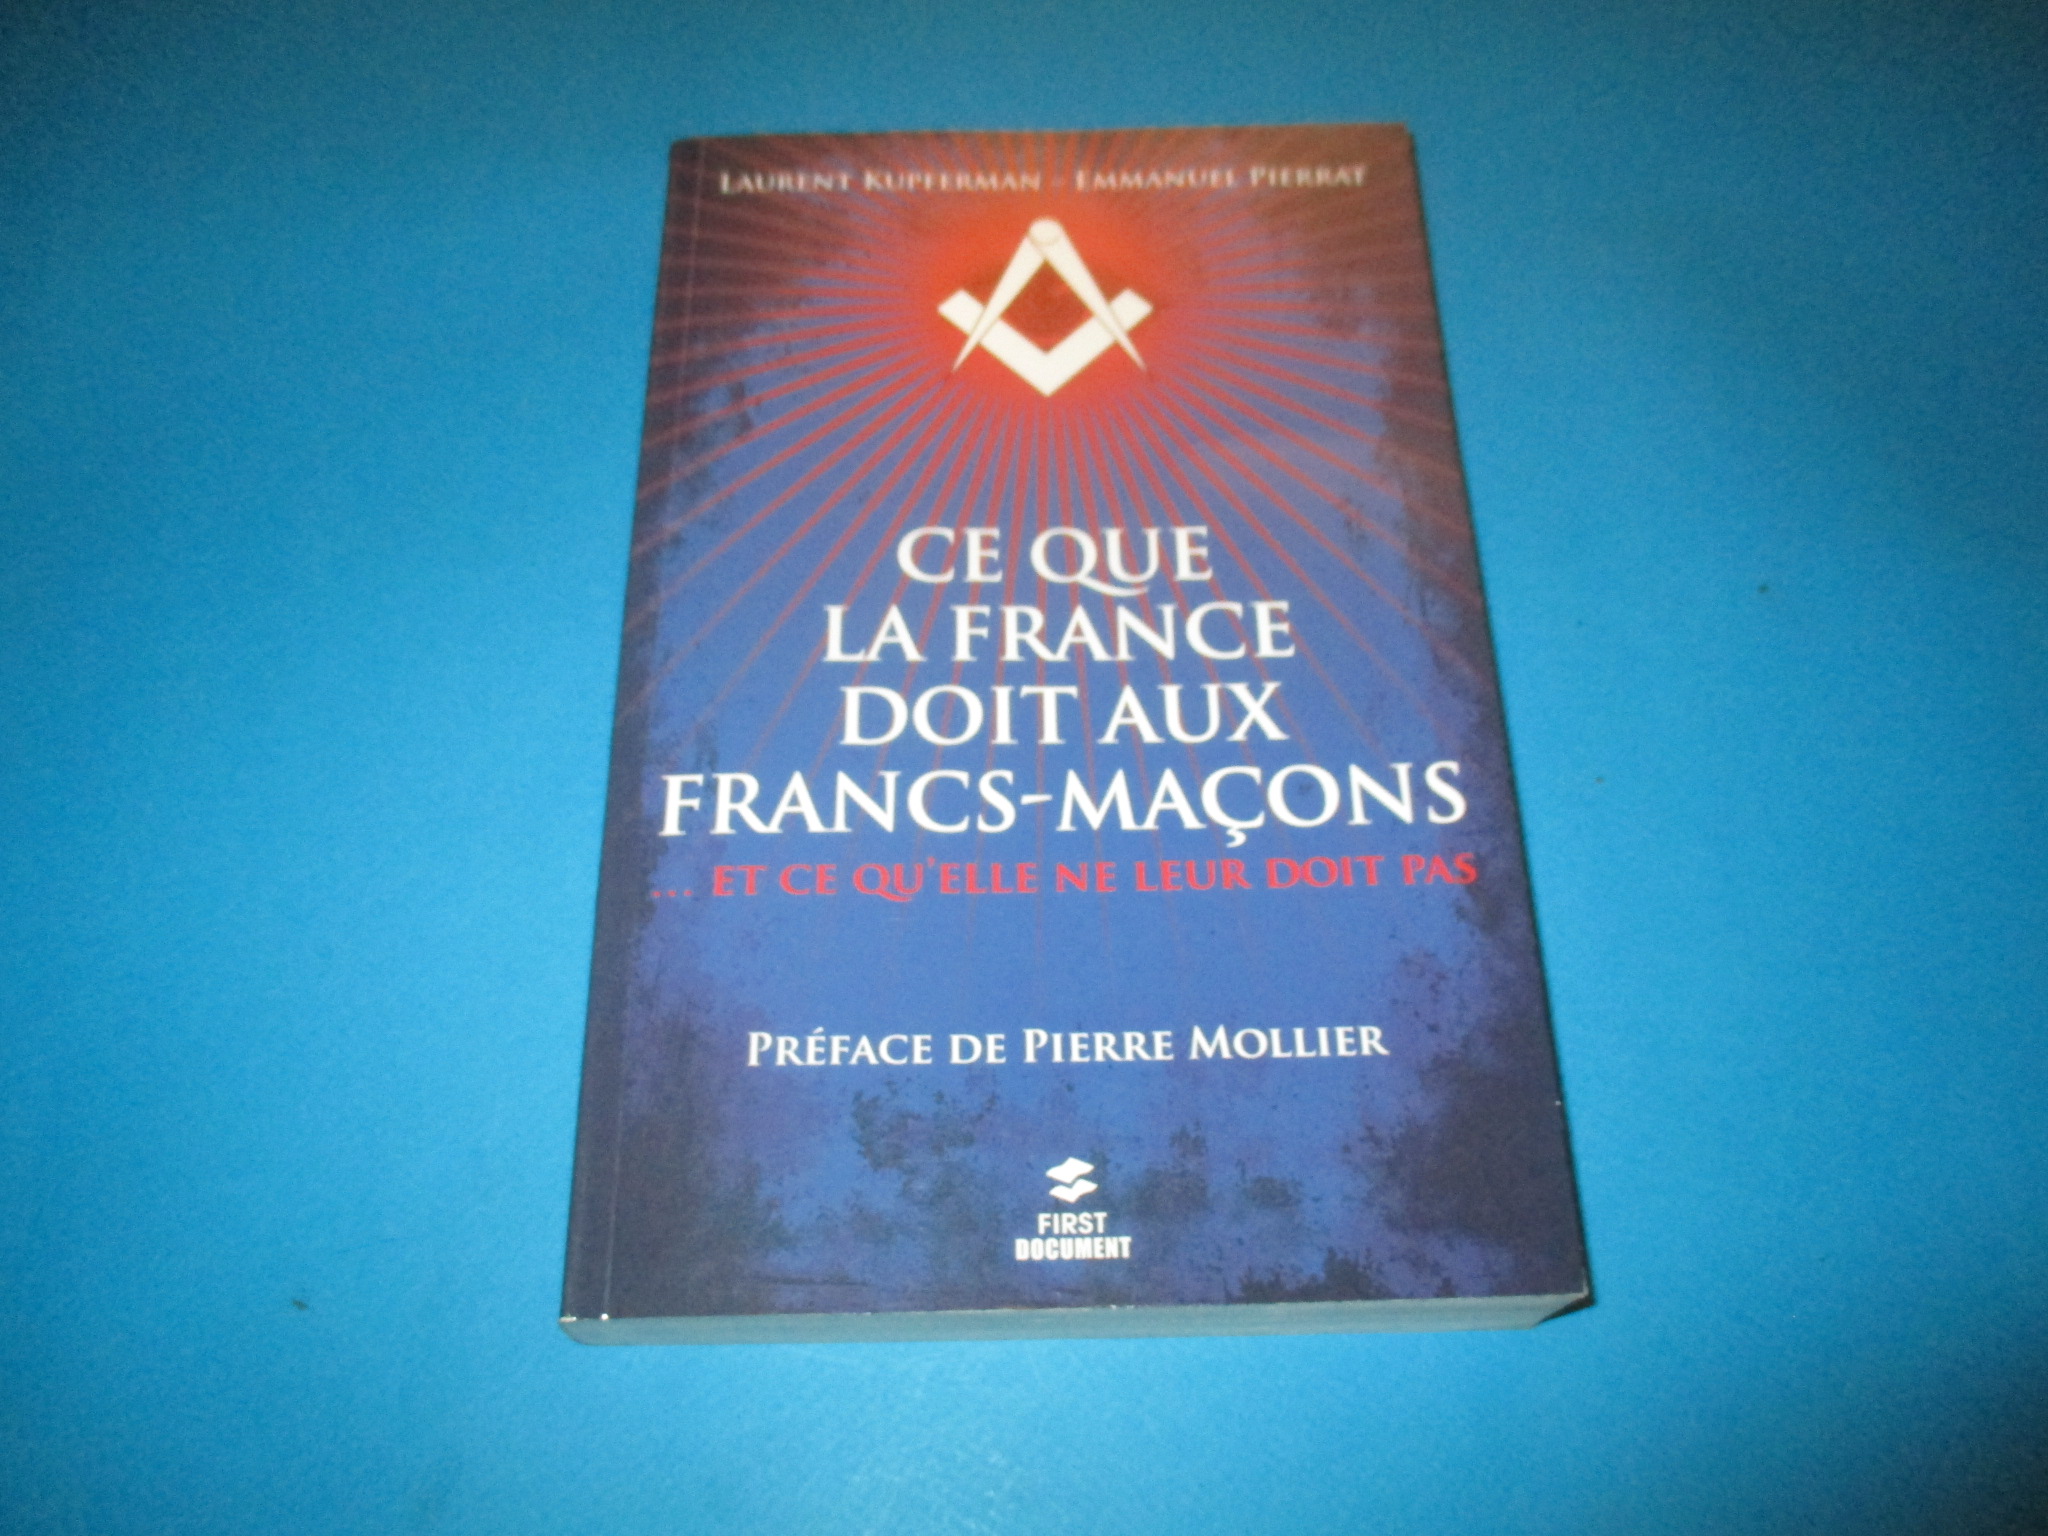 Ce que la France doit aux Francs-Maçons ... et ce qu\'elle ne leur doit pas, Laurent Kupferman & Emmanuel Pierrat, First